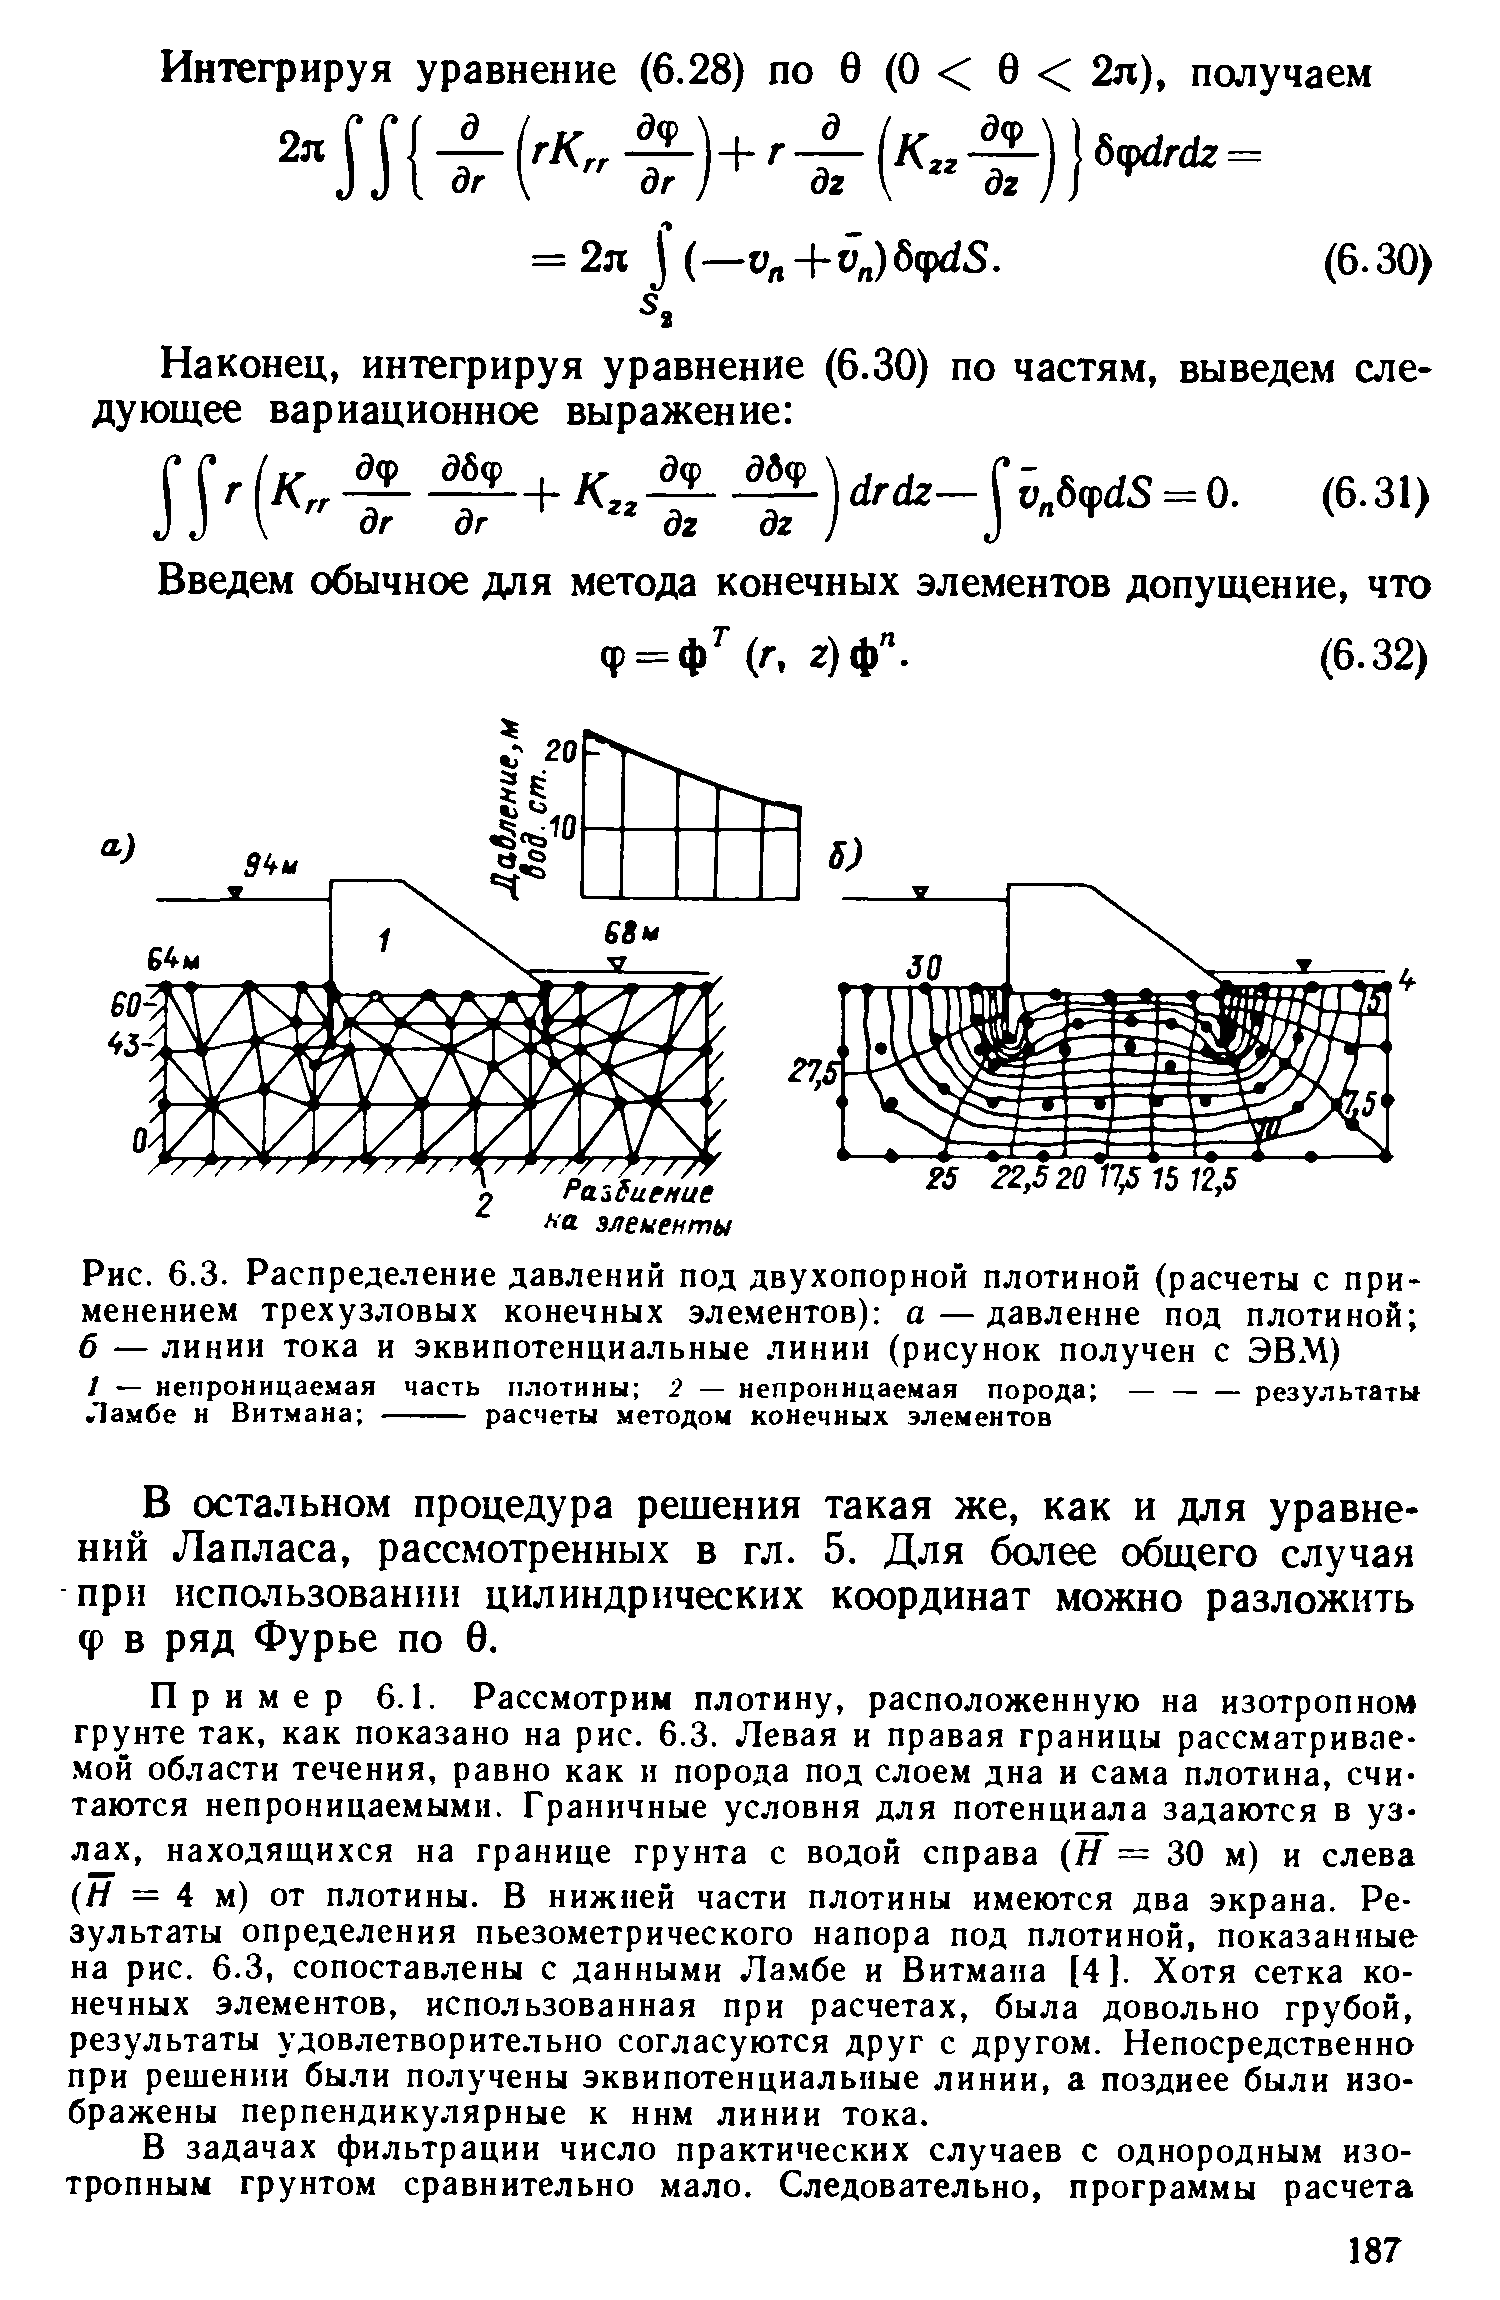 В остальном процедура решения такая же, как и для уравнений Лапласа, рассмотренных в гл. 5. Для более общего случая прн испадьзованнп цилиндрических координат можно разложить Ф в ряд Фурье по 0.
